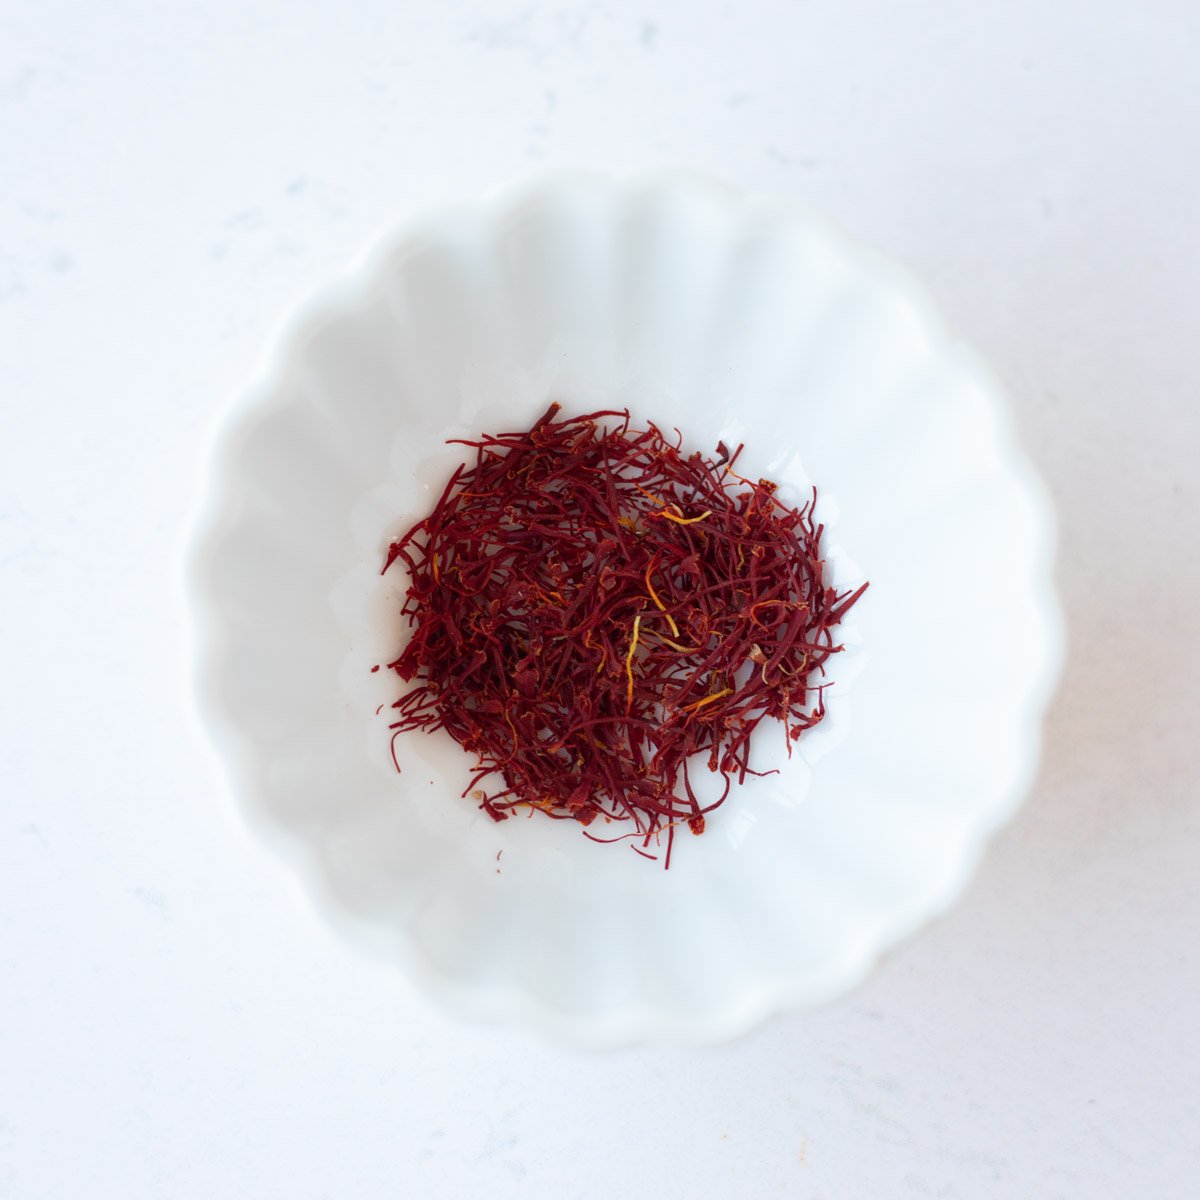 Saffron in a small white bowl.